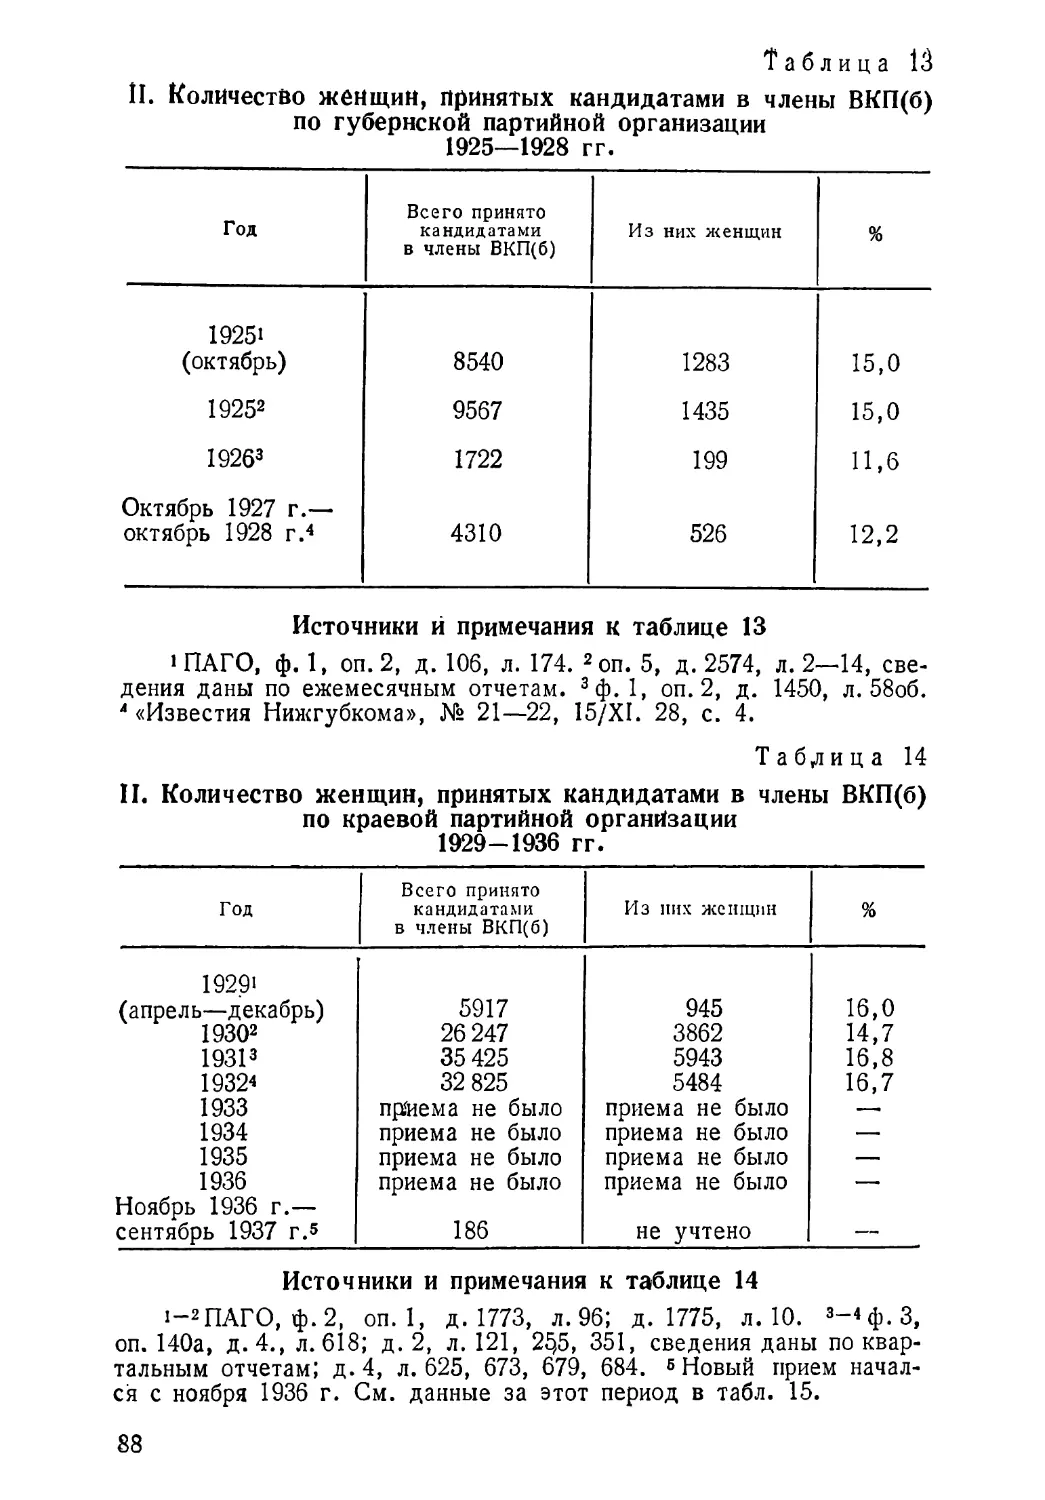 Количество женщин, принятых кандидатами в члены КПСС 1925—1928 гг. Таблица 13
1929—1936 гг. Таблица 14